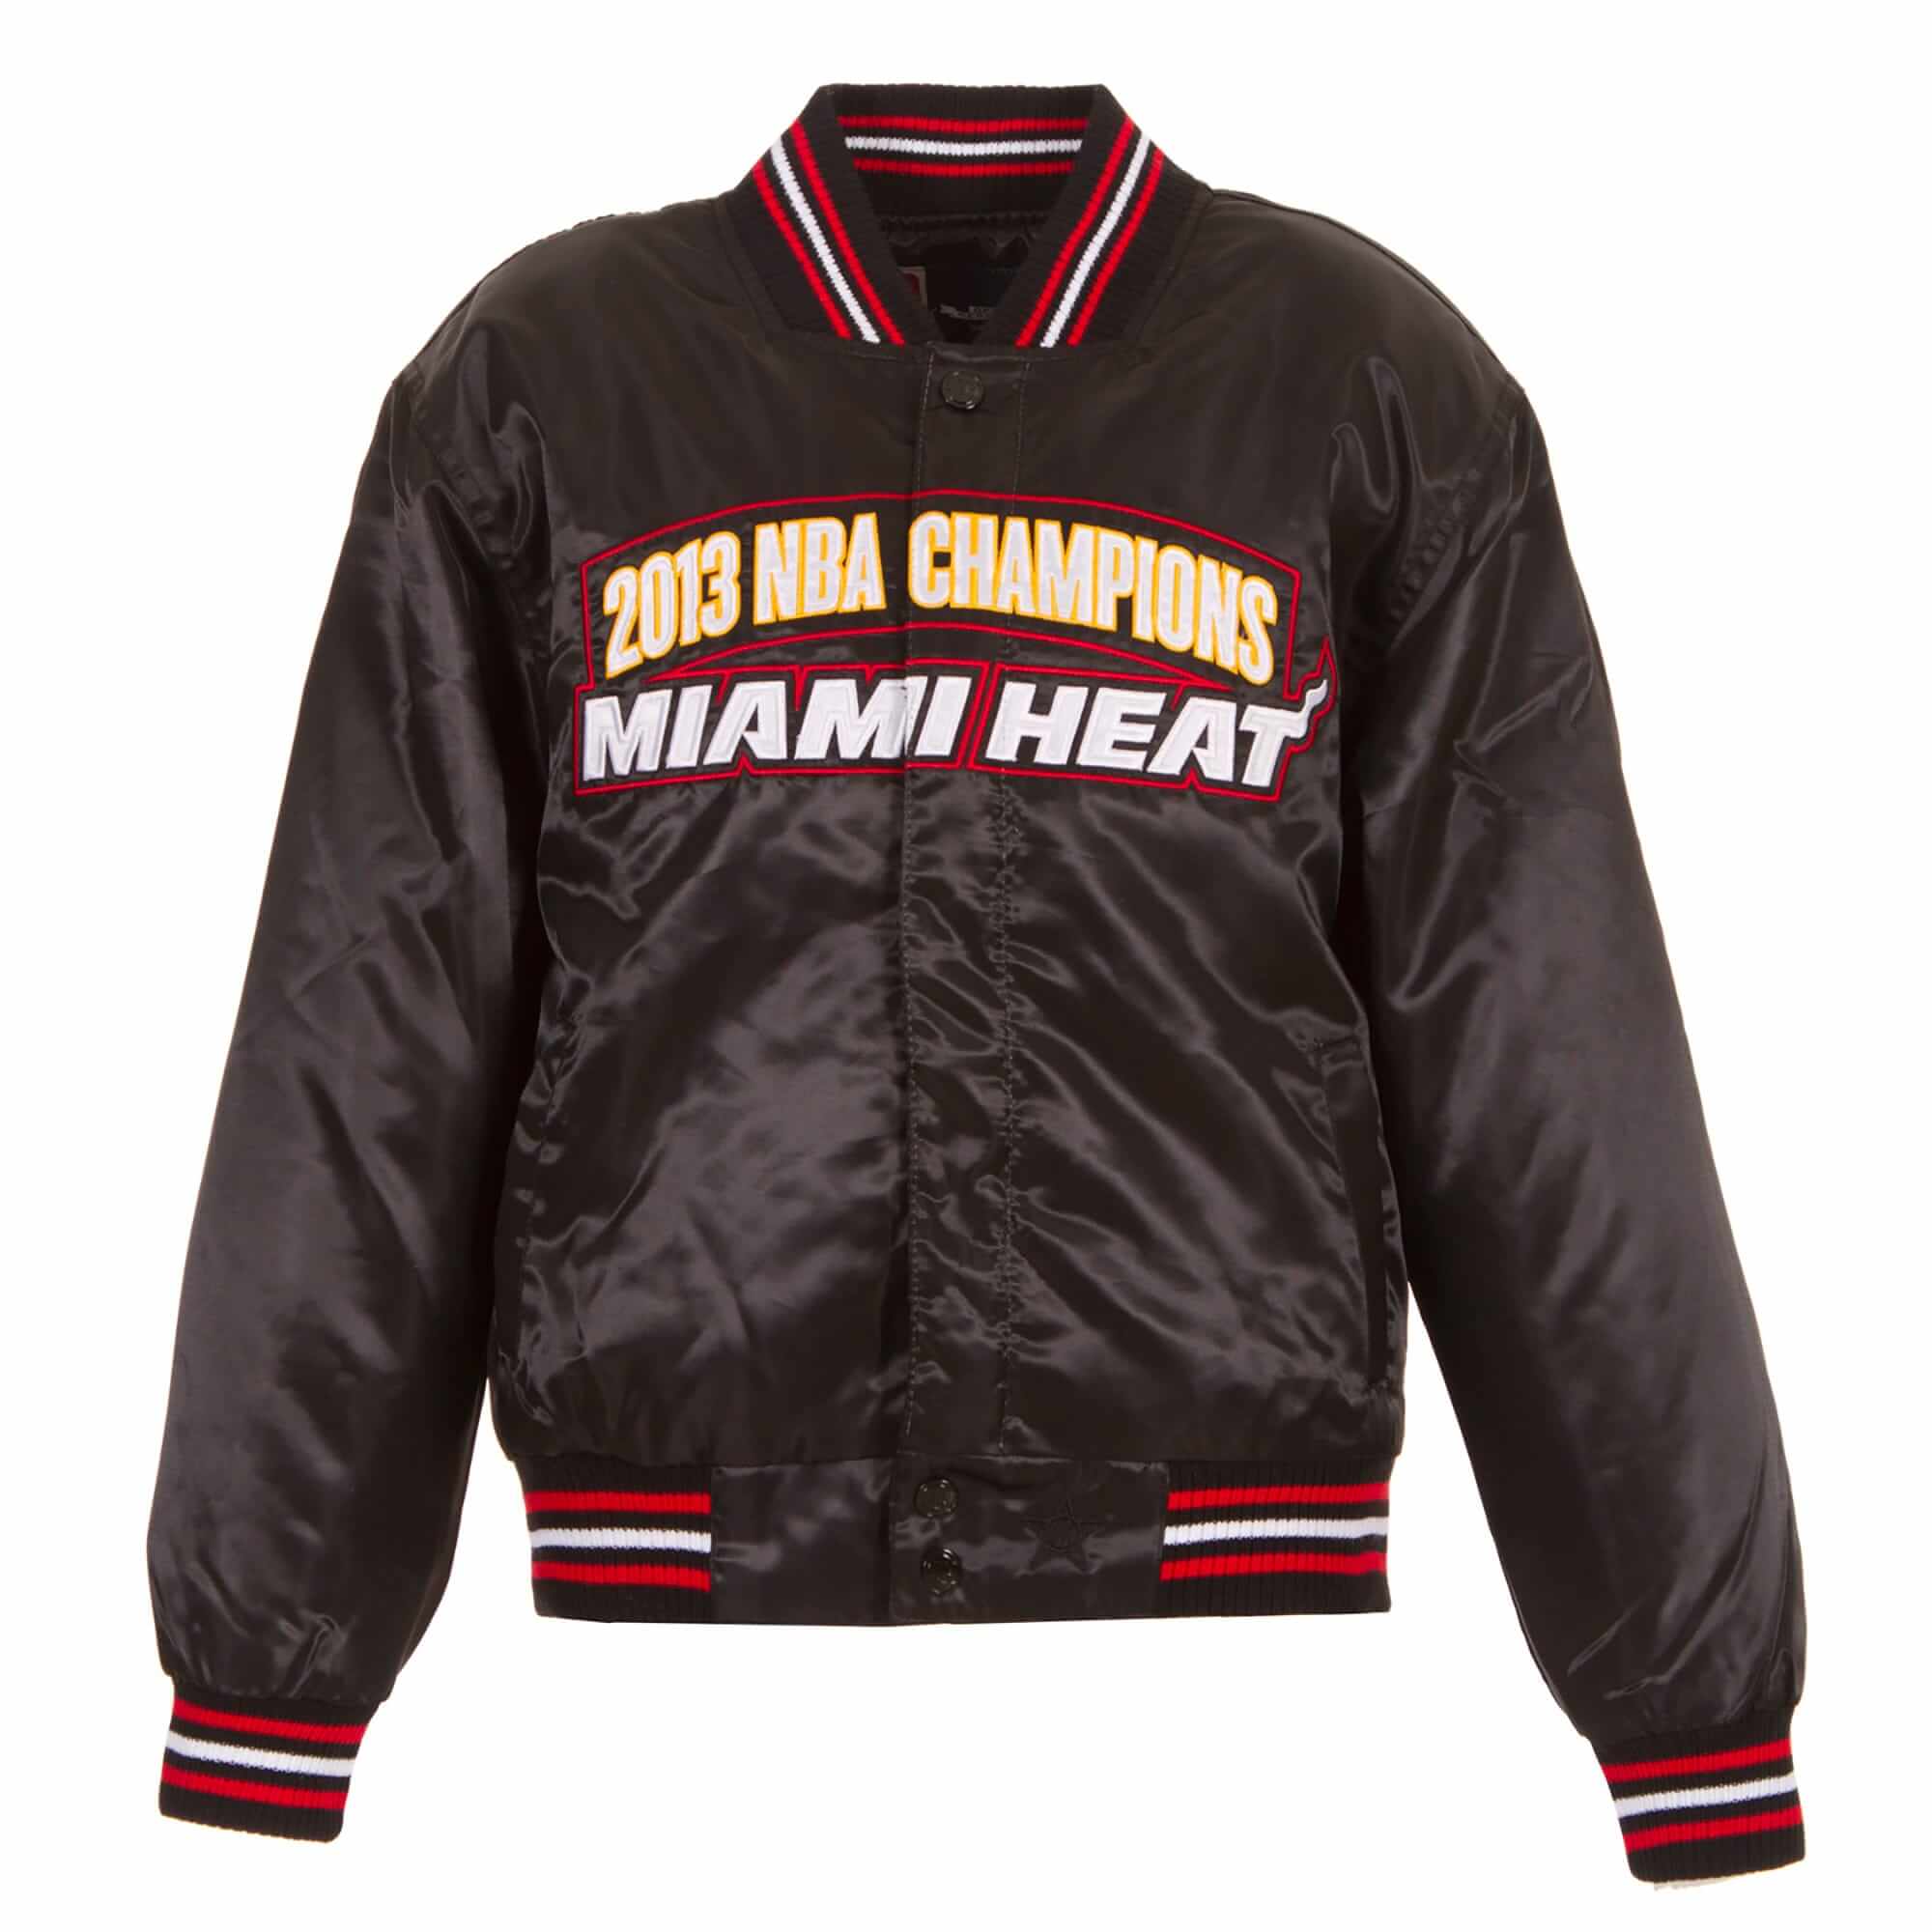 Miami Heat 2012 NBA Champions - Adult Twill Jacket